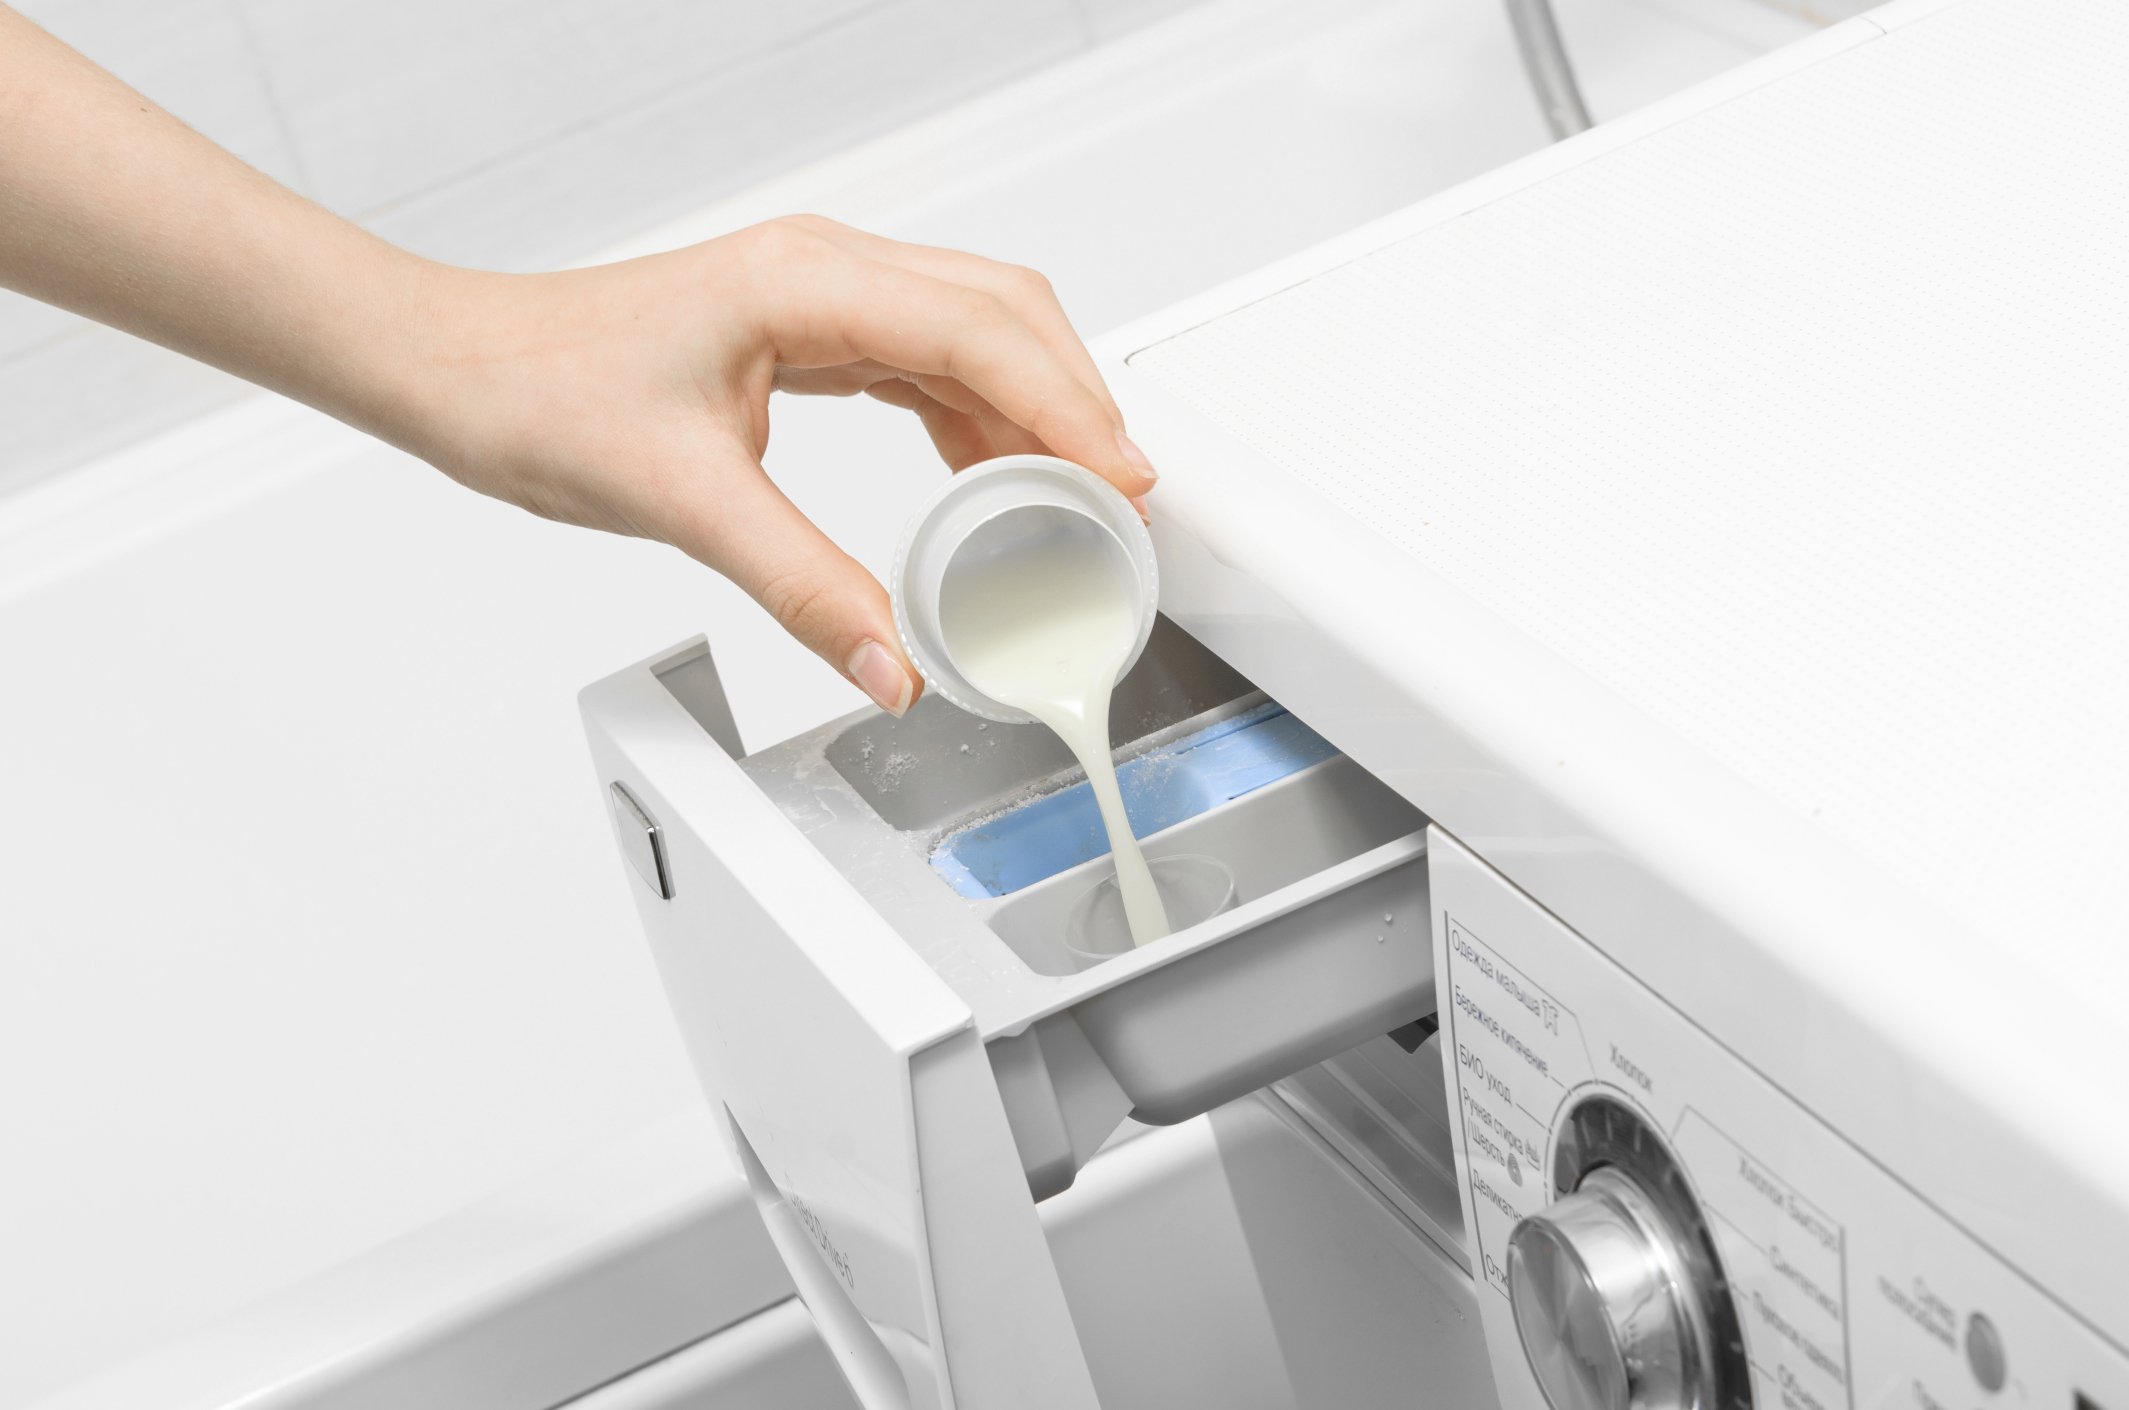 Машинка стирает холодной водой. Порошок Laundry Detergent. Стиральная машина бош отсеки для порошка. Порошок для стирки в стиральной машине. Отсек для жидкого средства в стиральную машину.